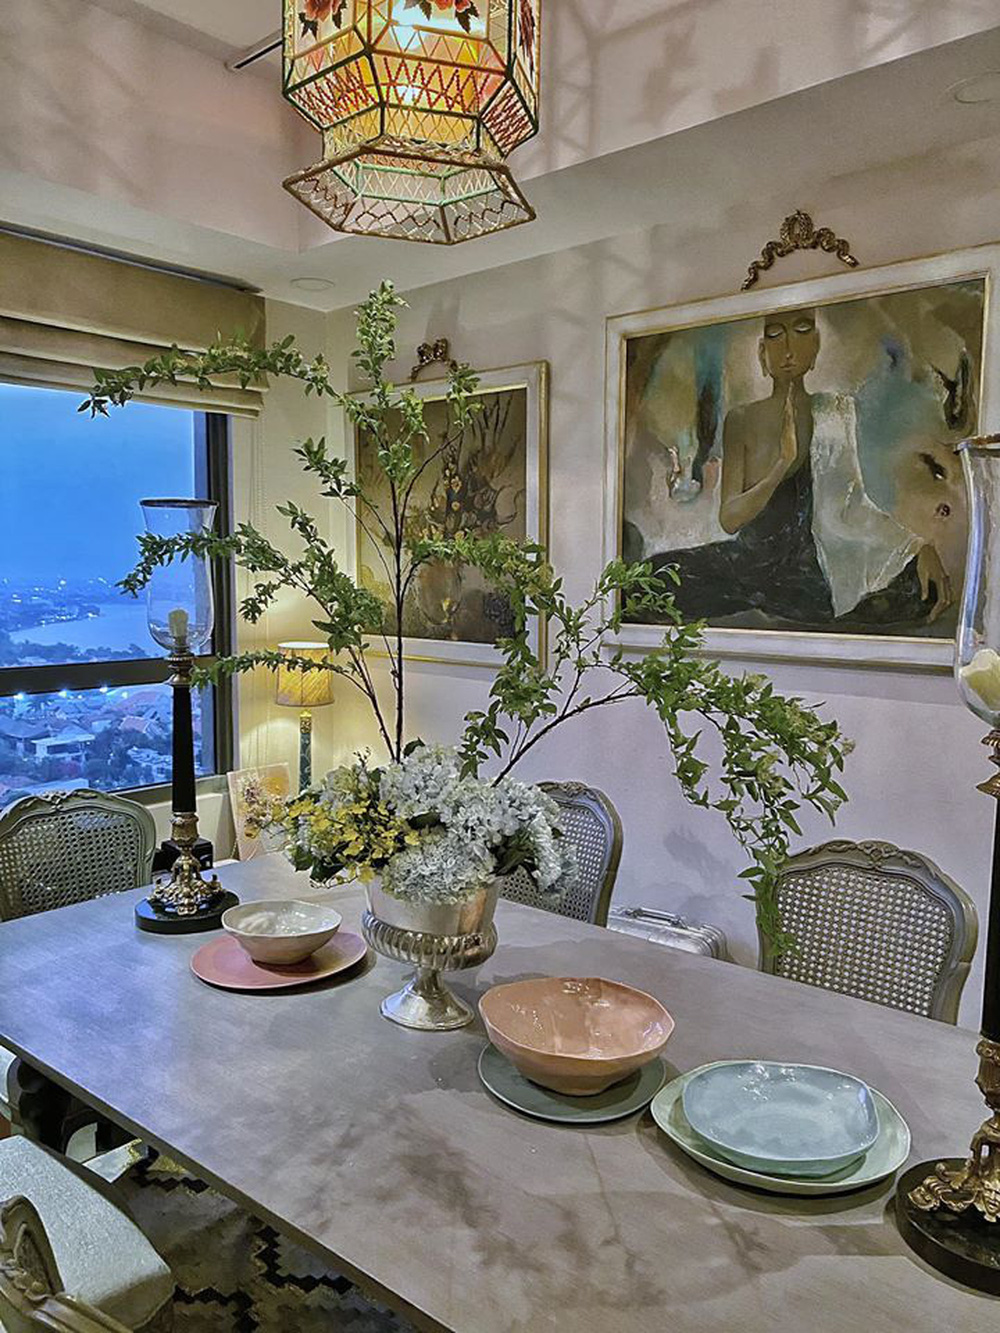 Căn penthouse triệu đô của NTK Lý Quí Khánh: Nội thất đậm chất vintage, đẹp mỹ mãn như một bức tranh - Ảnh 12.